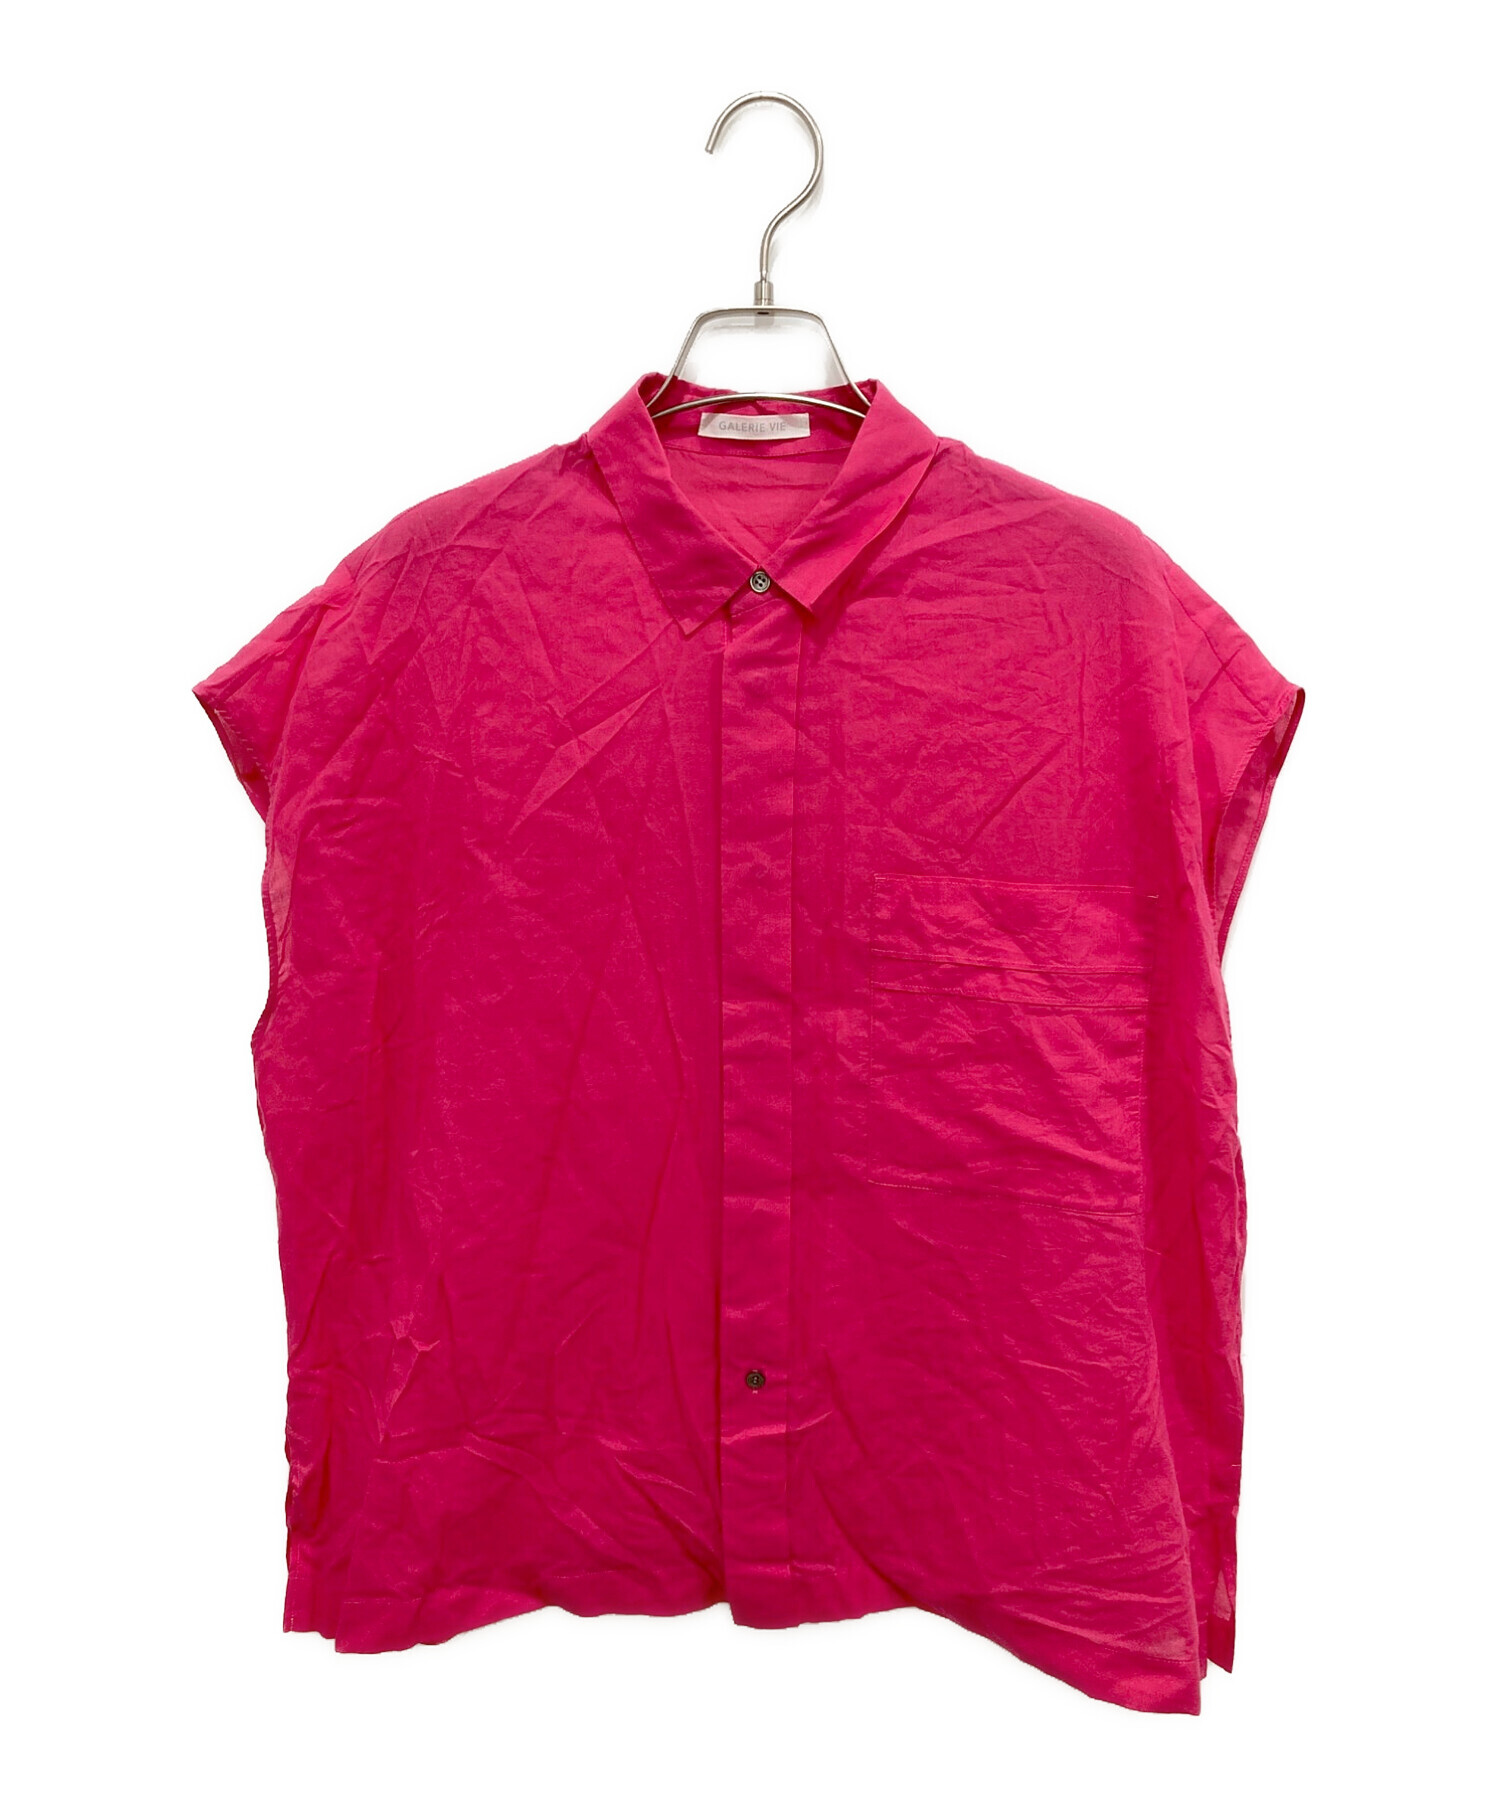 GALERIE VIE (ギャルリーヴィー) インドコットンフレンチスリーブシャツ ピンク サイズ:Free